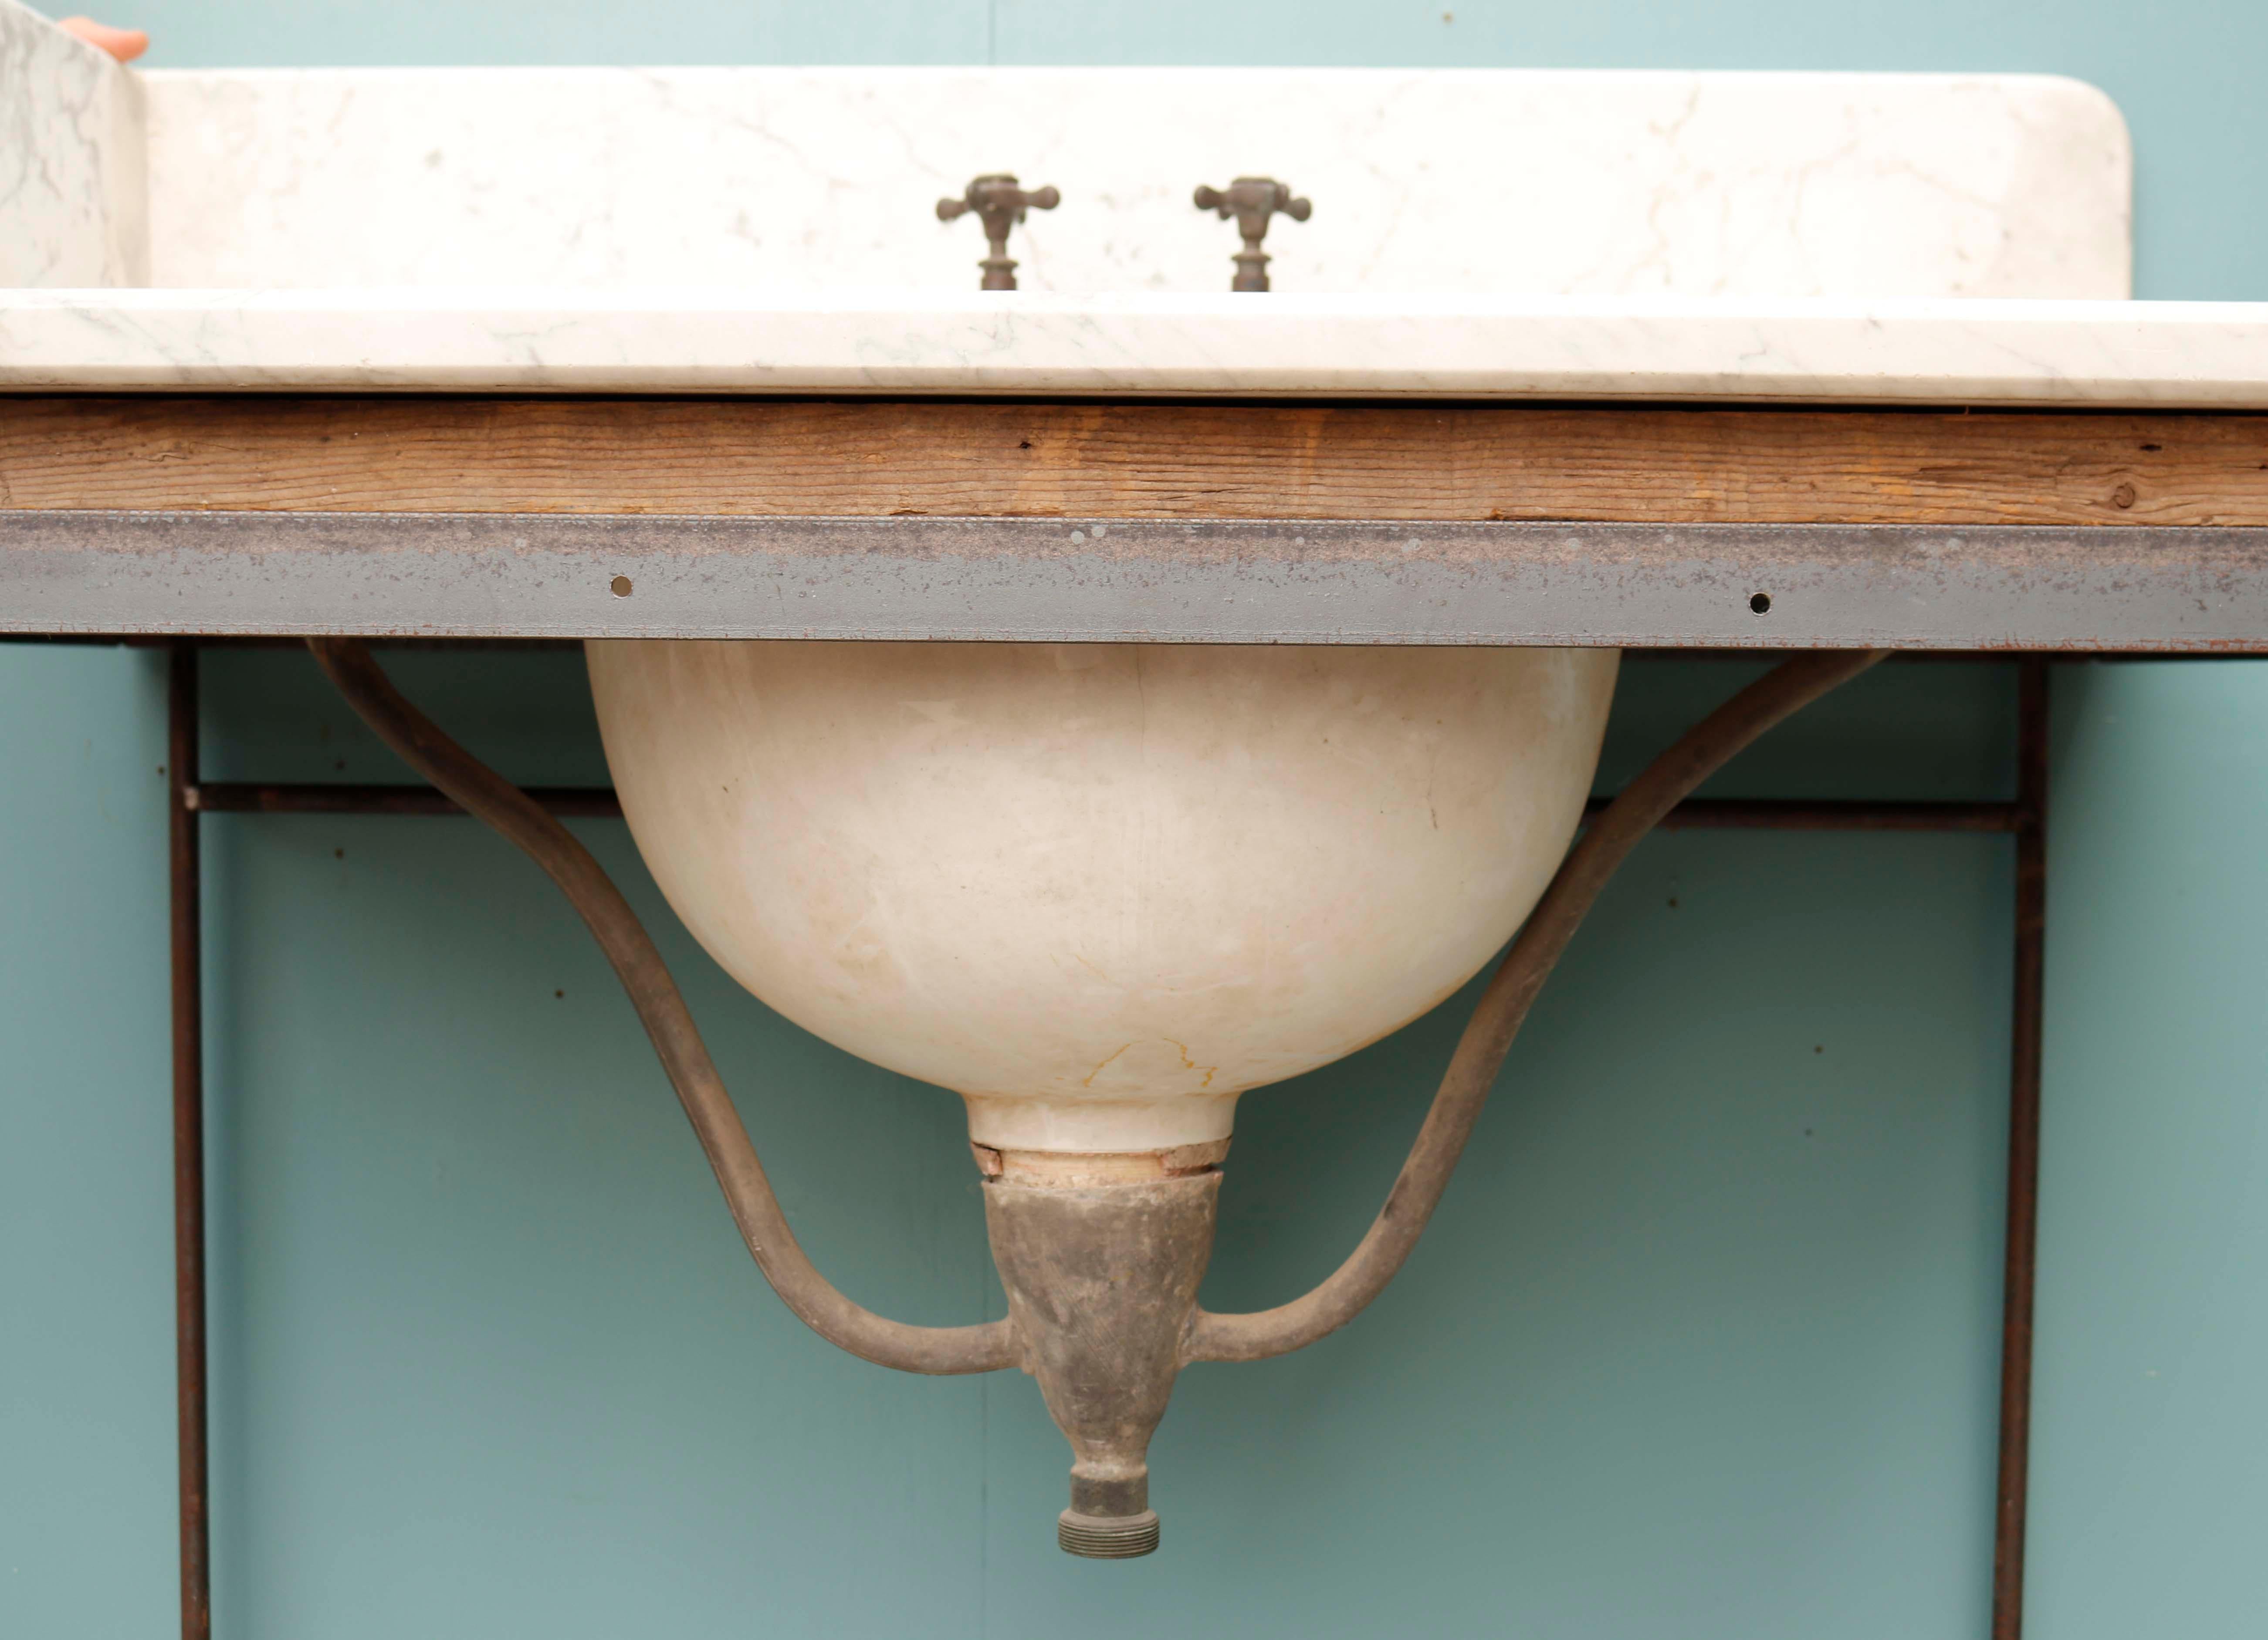 Évier en marbre George Jennings à poser. Un lavabo en marbre conçu par Jennings qui a figuré à la Grande Exposition de 1851 aux côtés de ses toilettes. Cela situe la production de ce produit au milieu du dix-neuvième siècle. Le meuble est moderne,